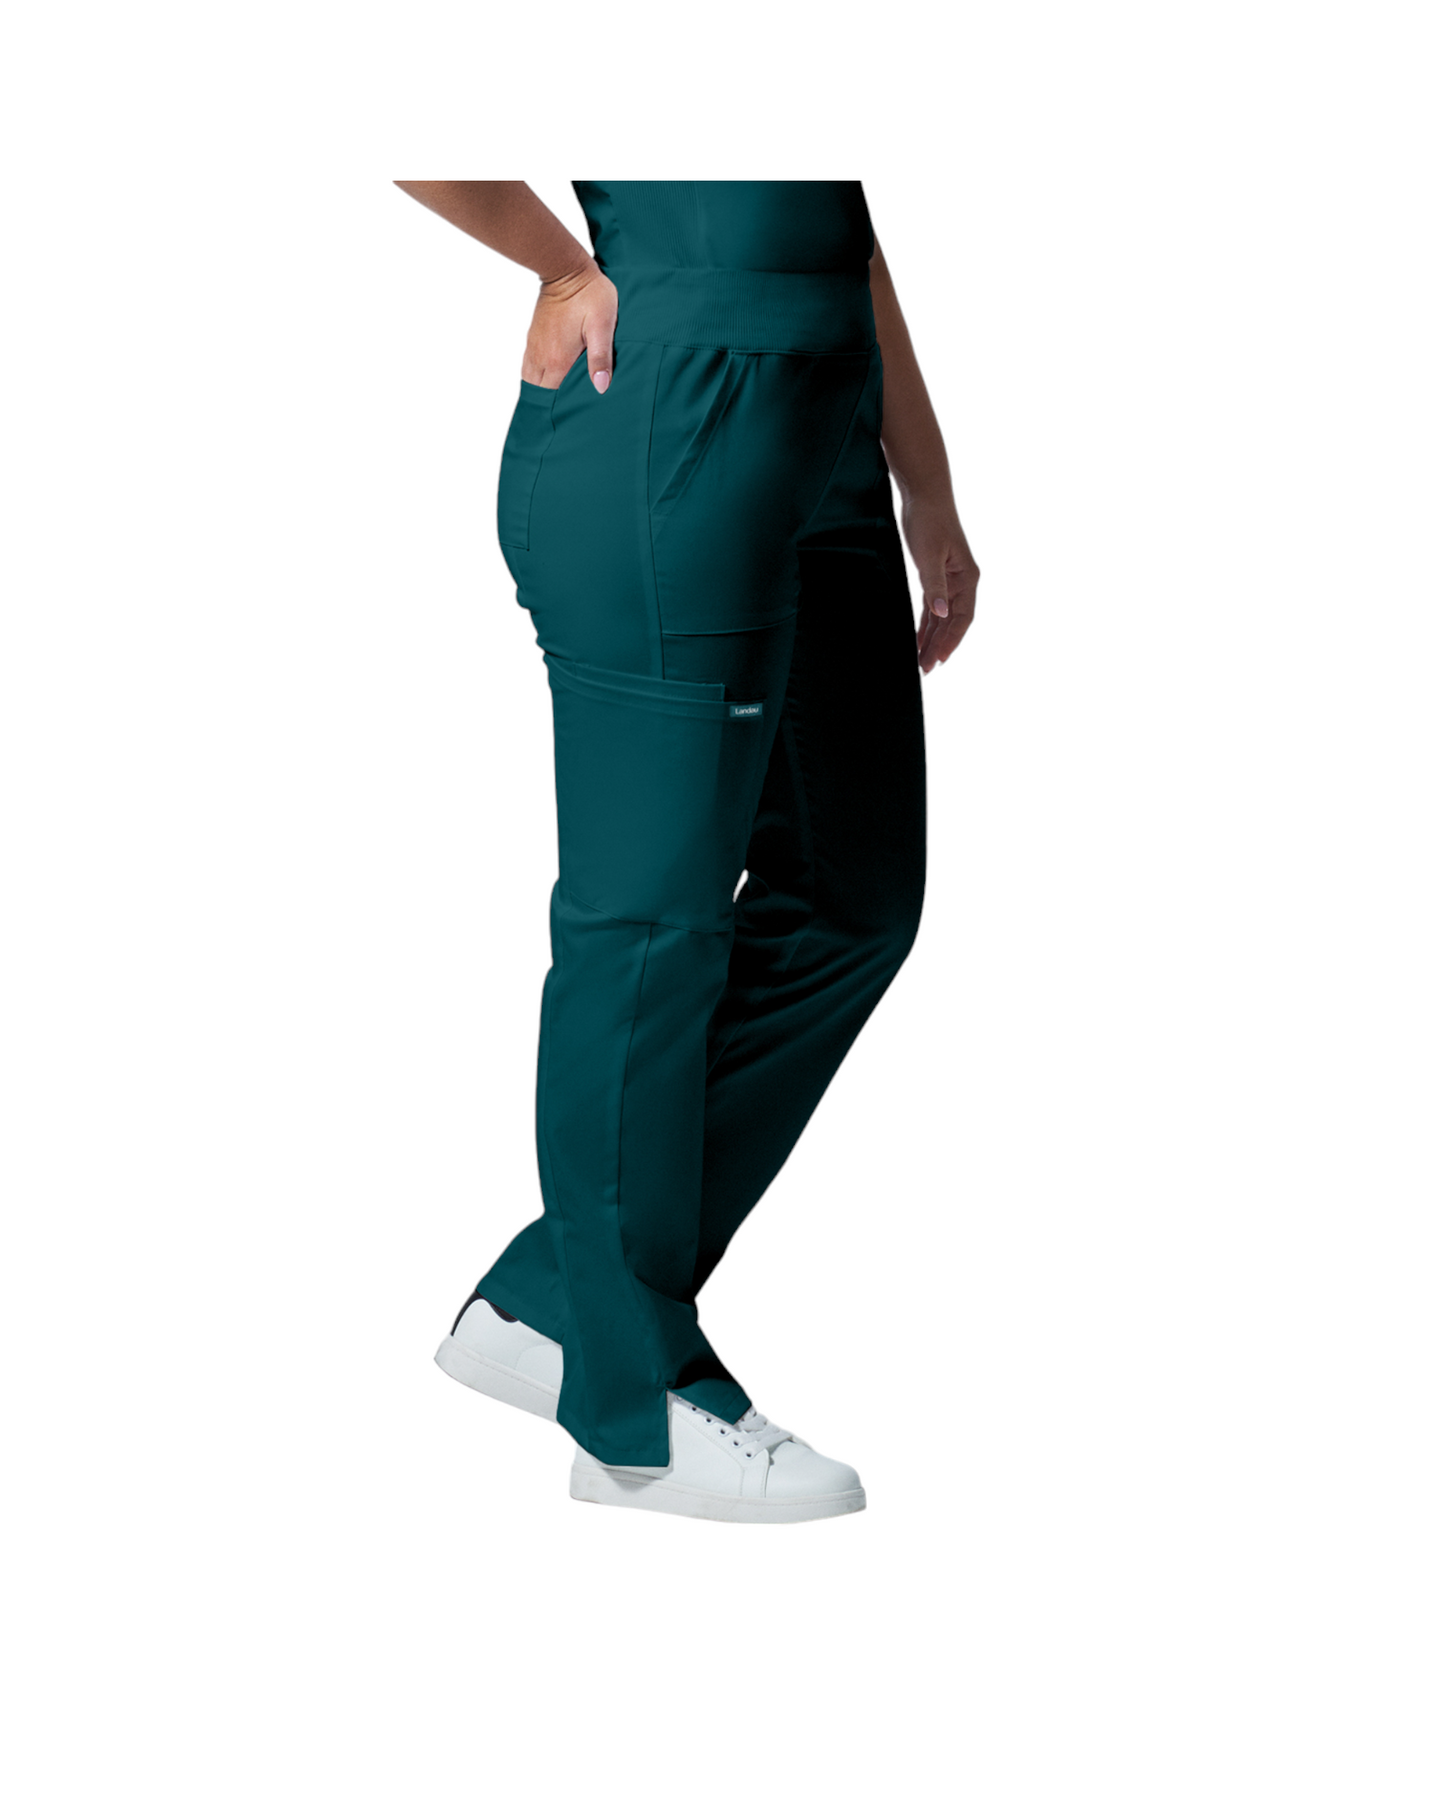 Pantalons  6 poches pour femmes Landau Proflex #LB405 couleur  Pantalons  6 poches pour femmes Landau Proflex #LB405 vue de côté couleur Caraïbes  